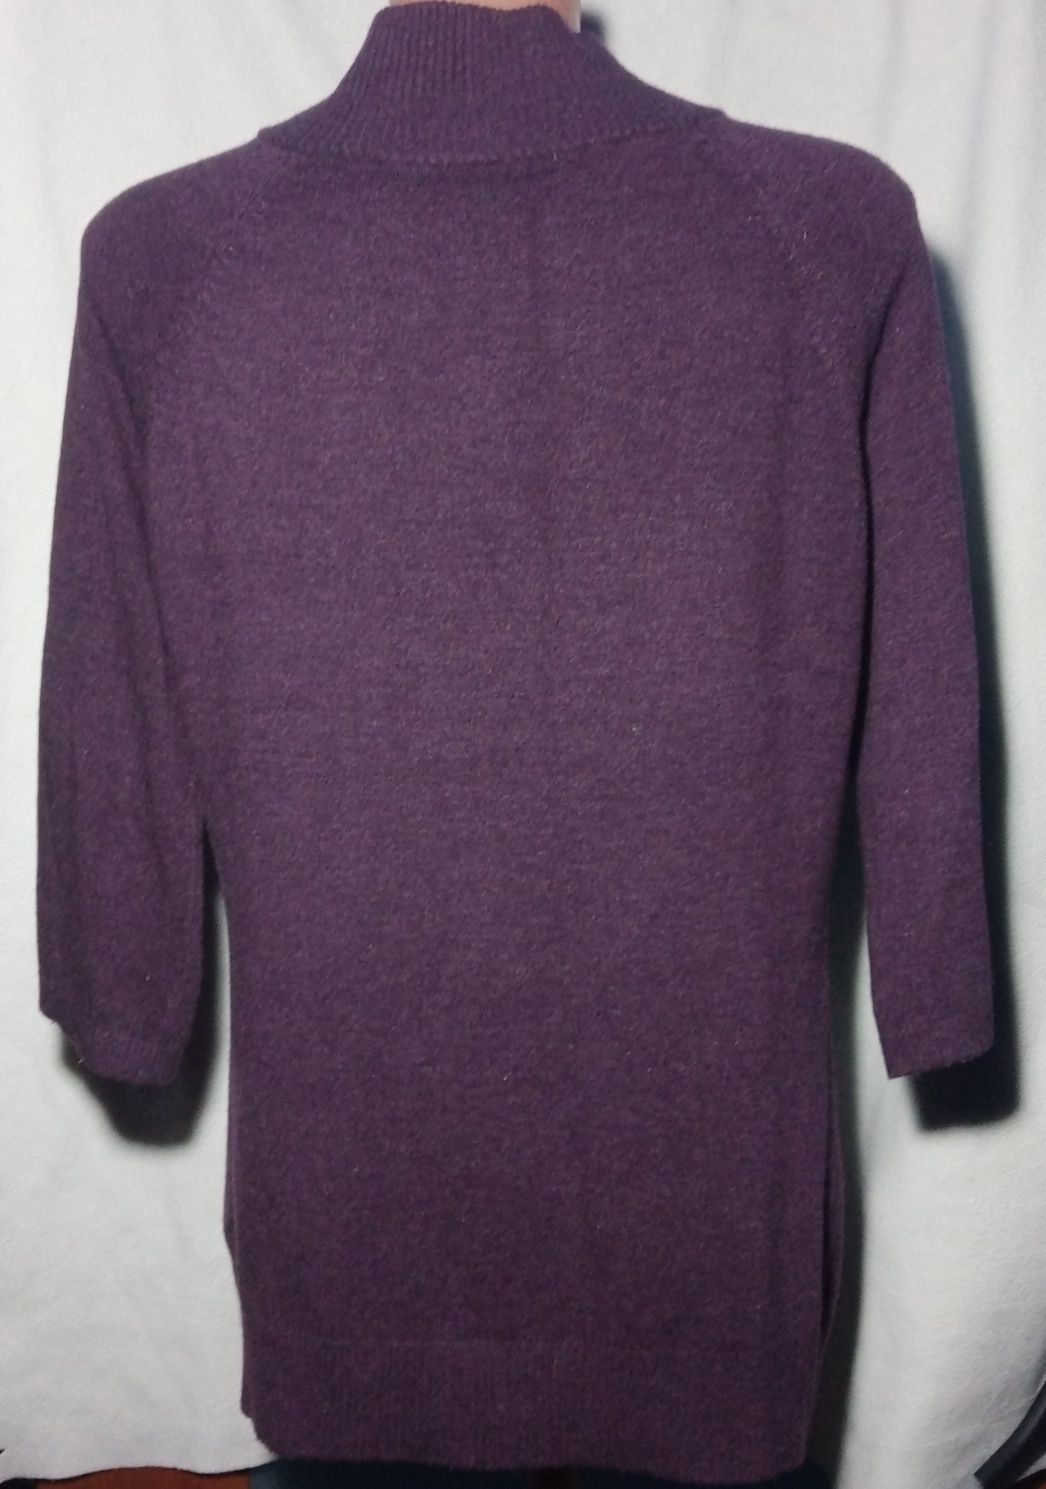 Fioletowy, śliwkowy sweter damski rozpinany rozmiar L/XL, kaszmir